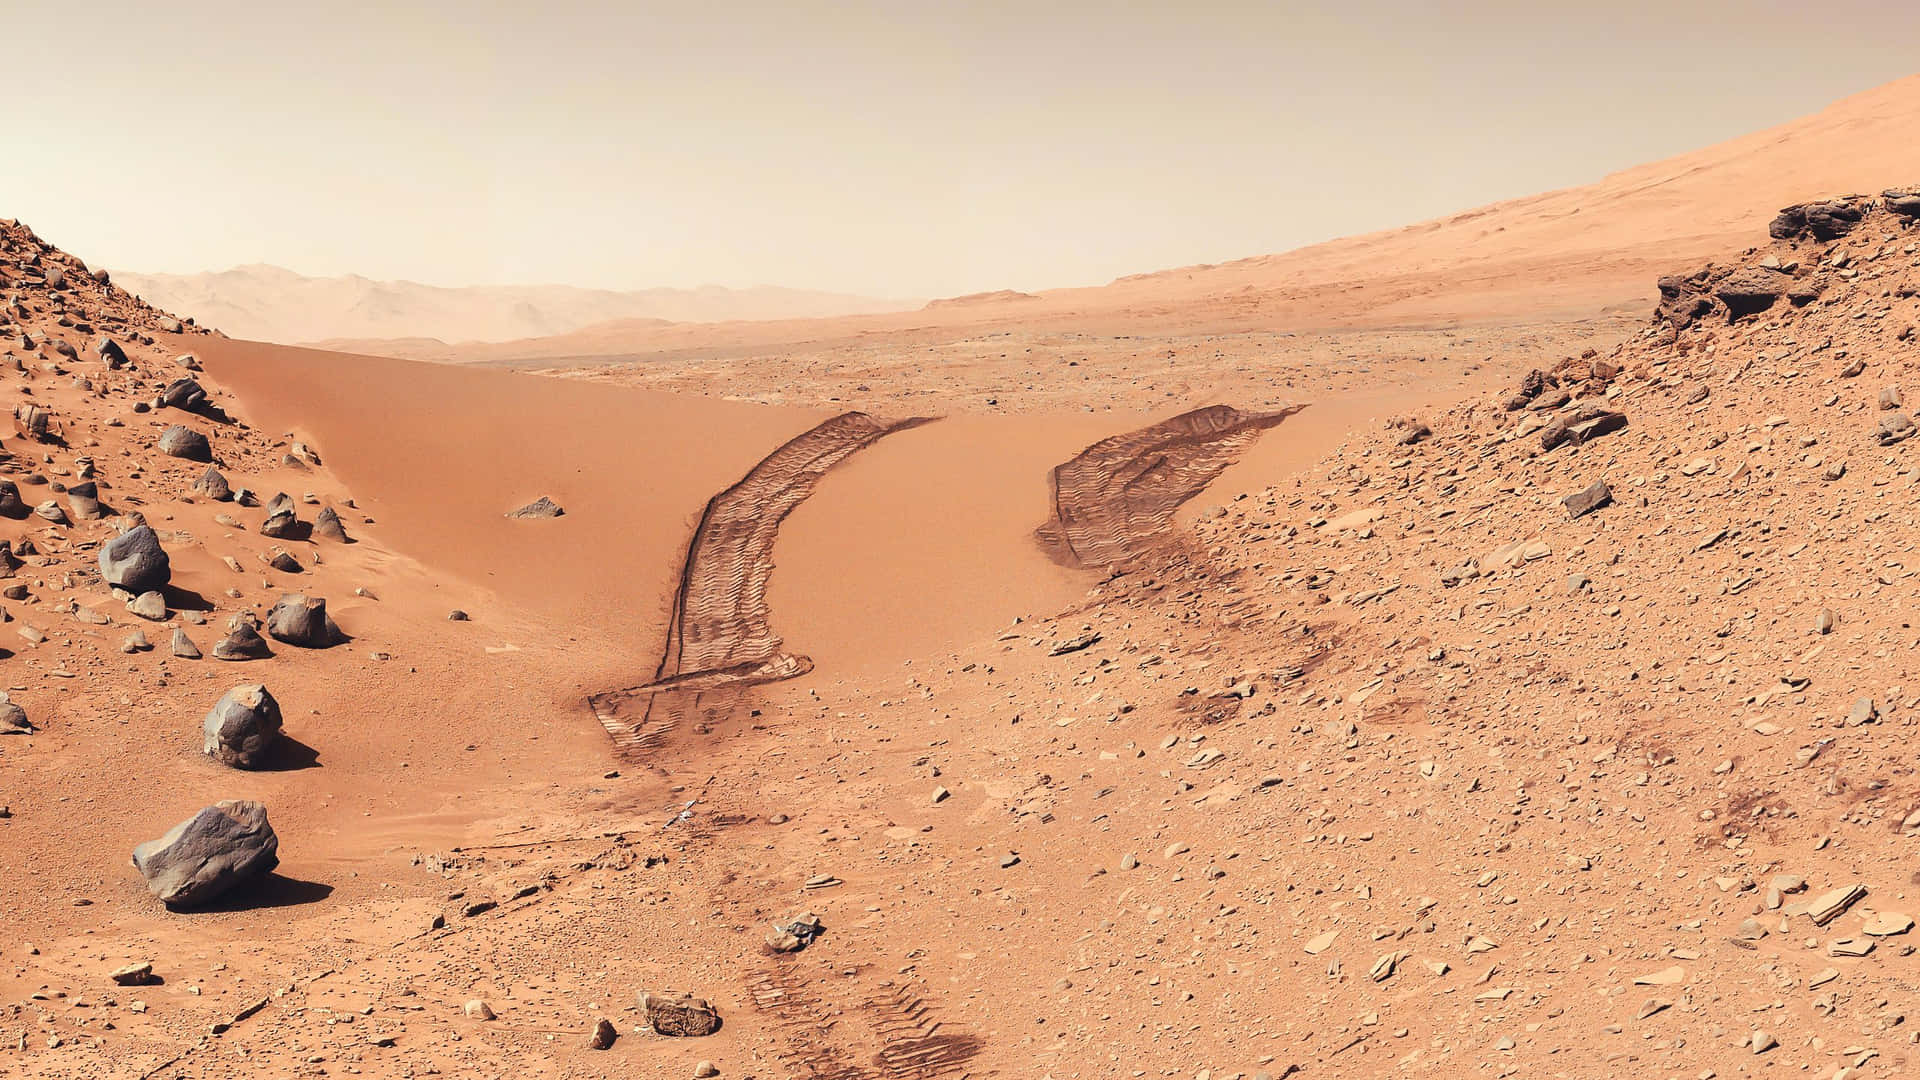 Stunning Mars Landscape at Dusk Wallpaper